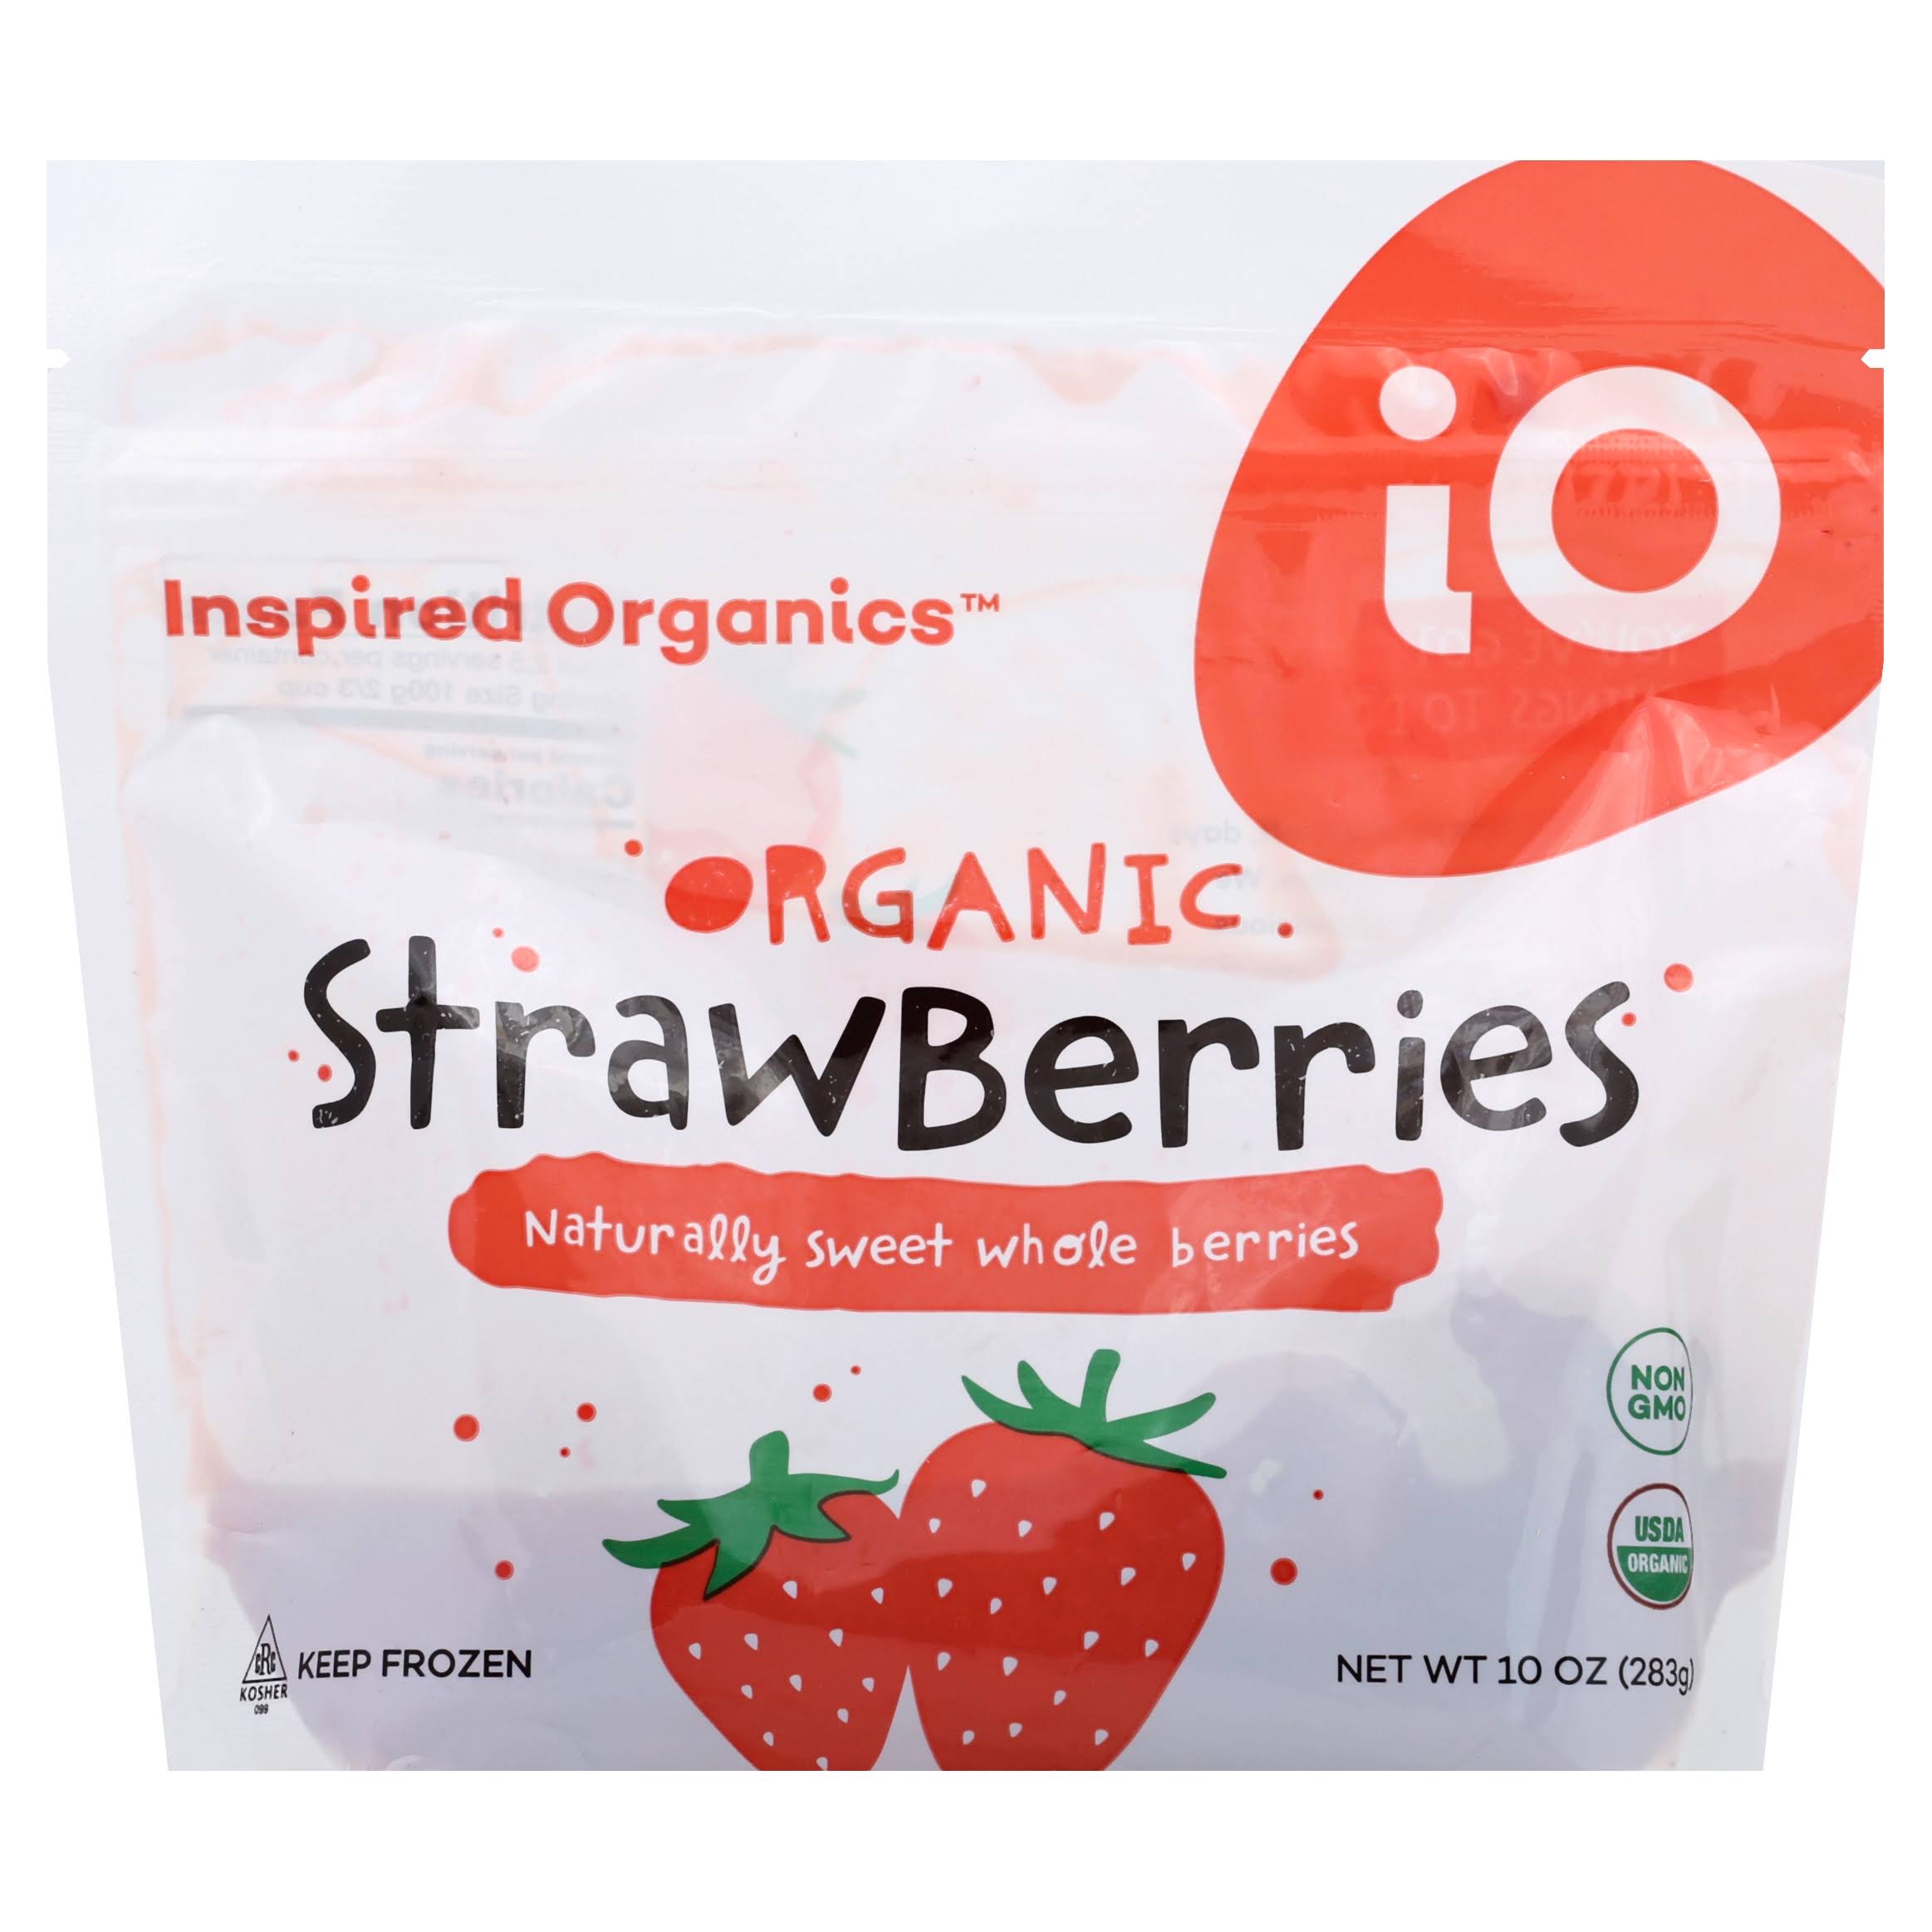 Inspired Organics Strawberries, Organic - 10 oz